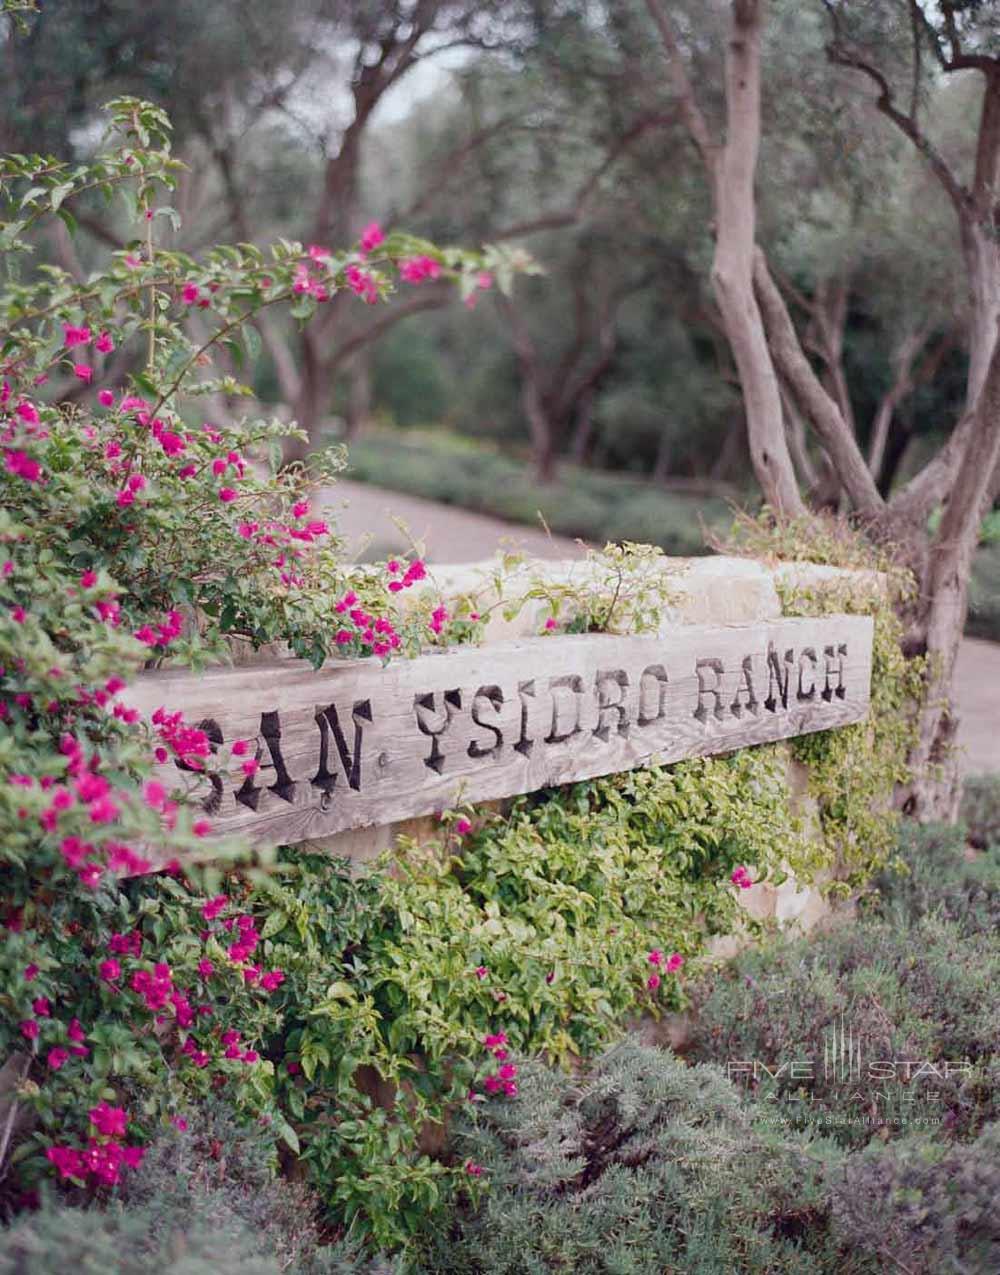 Hotel Entry Way to San Ysidro Ranch, Santa Barbara, CA